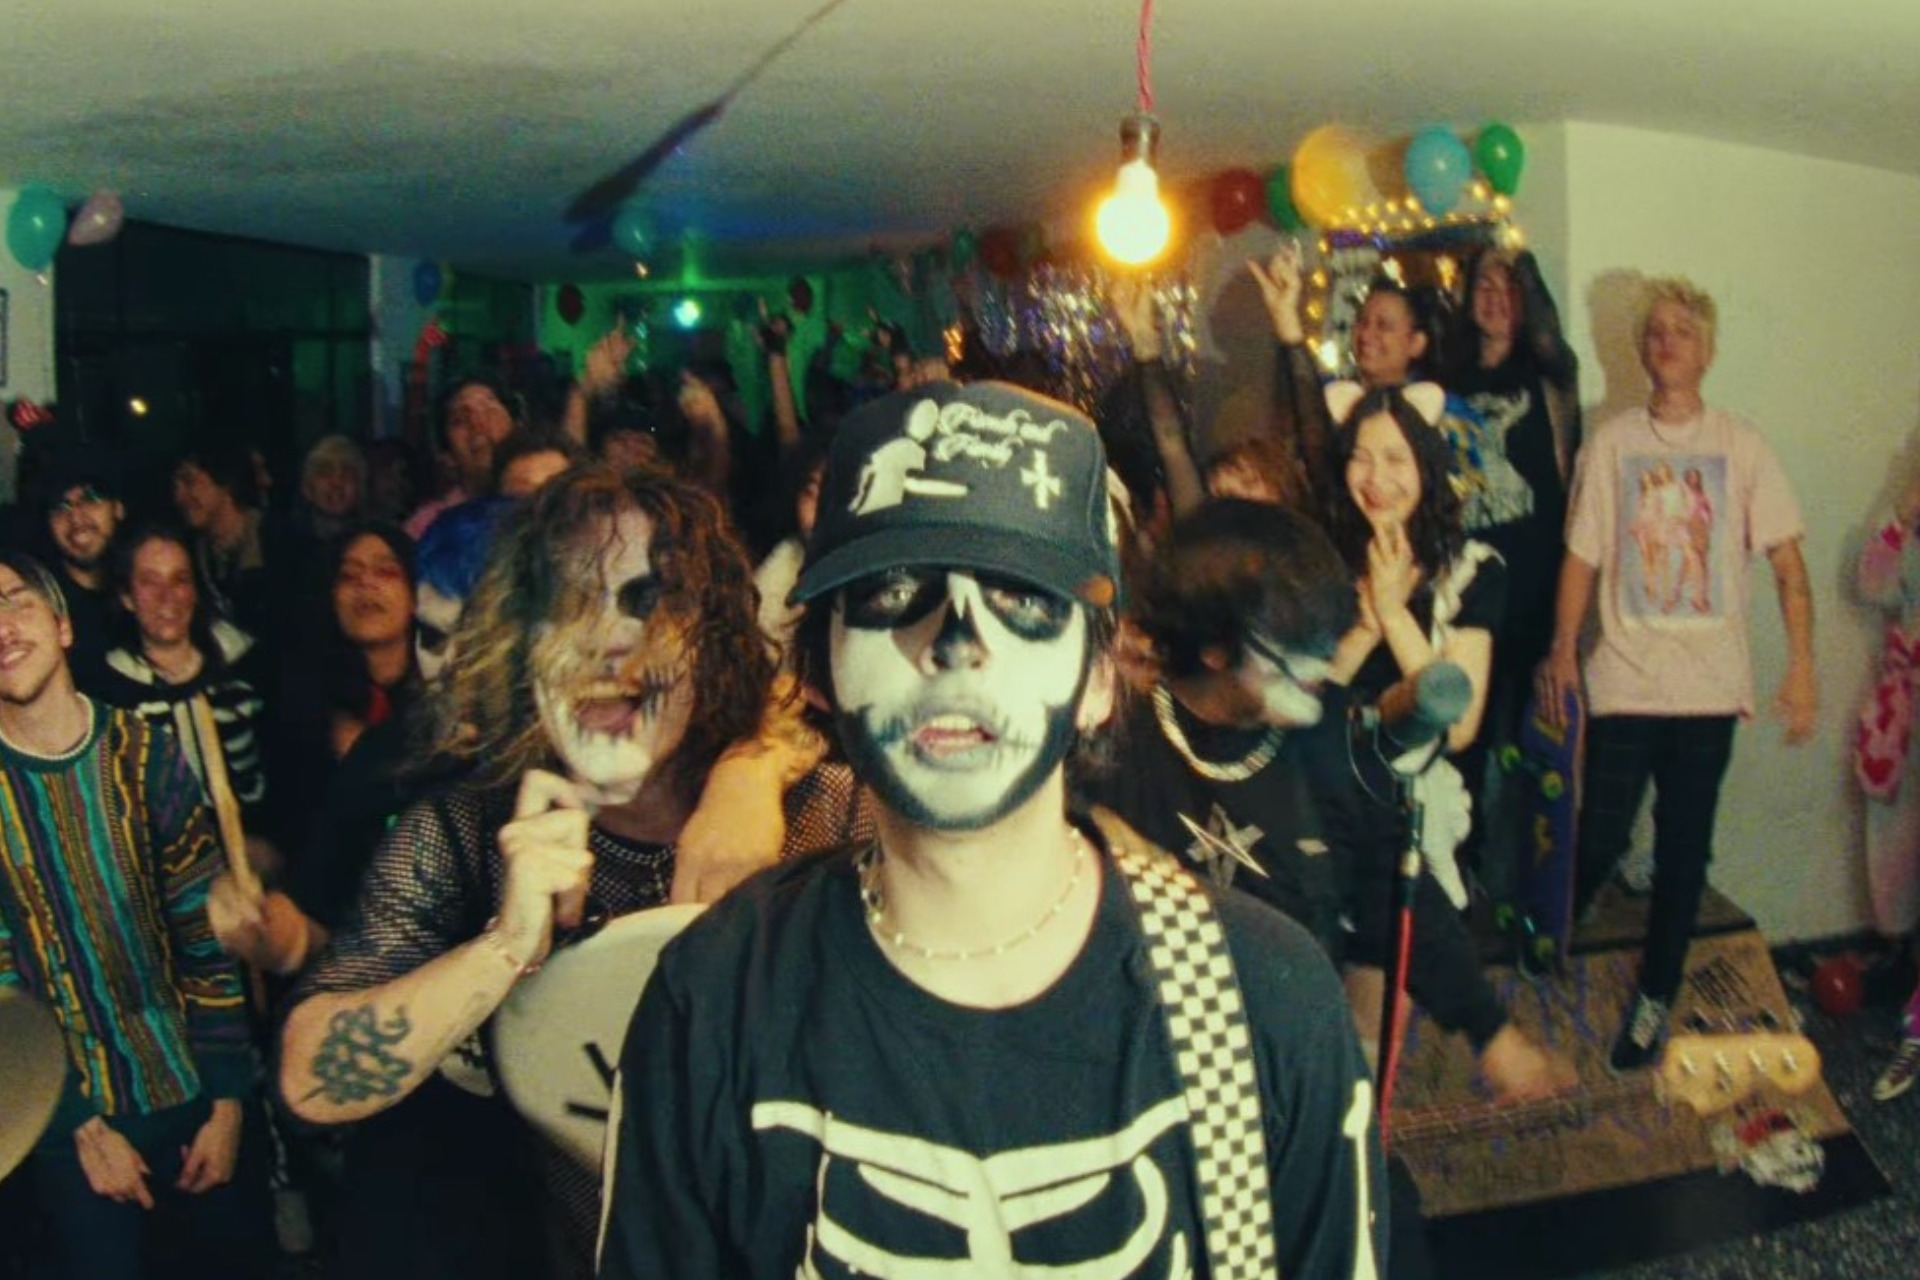 Blnko estrena su sencillo “Escúpeme En La Cara” y anuncia gira nacional